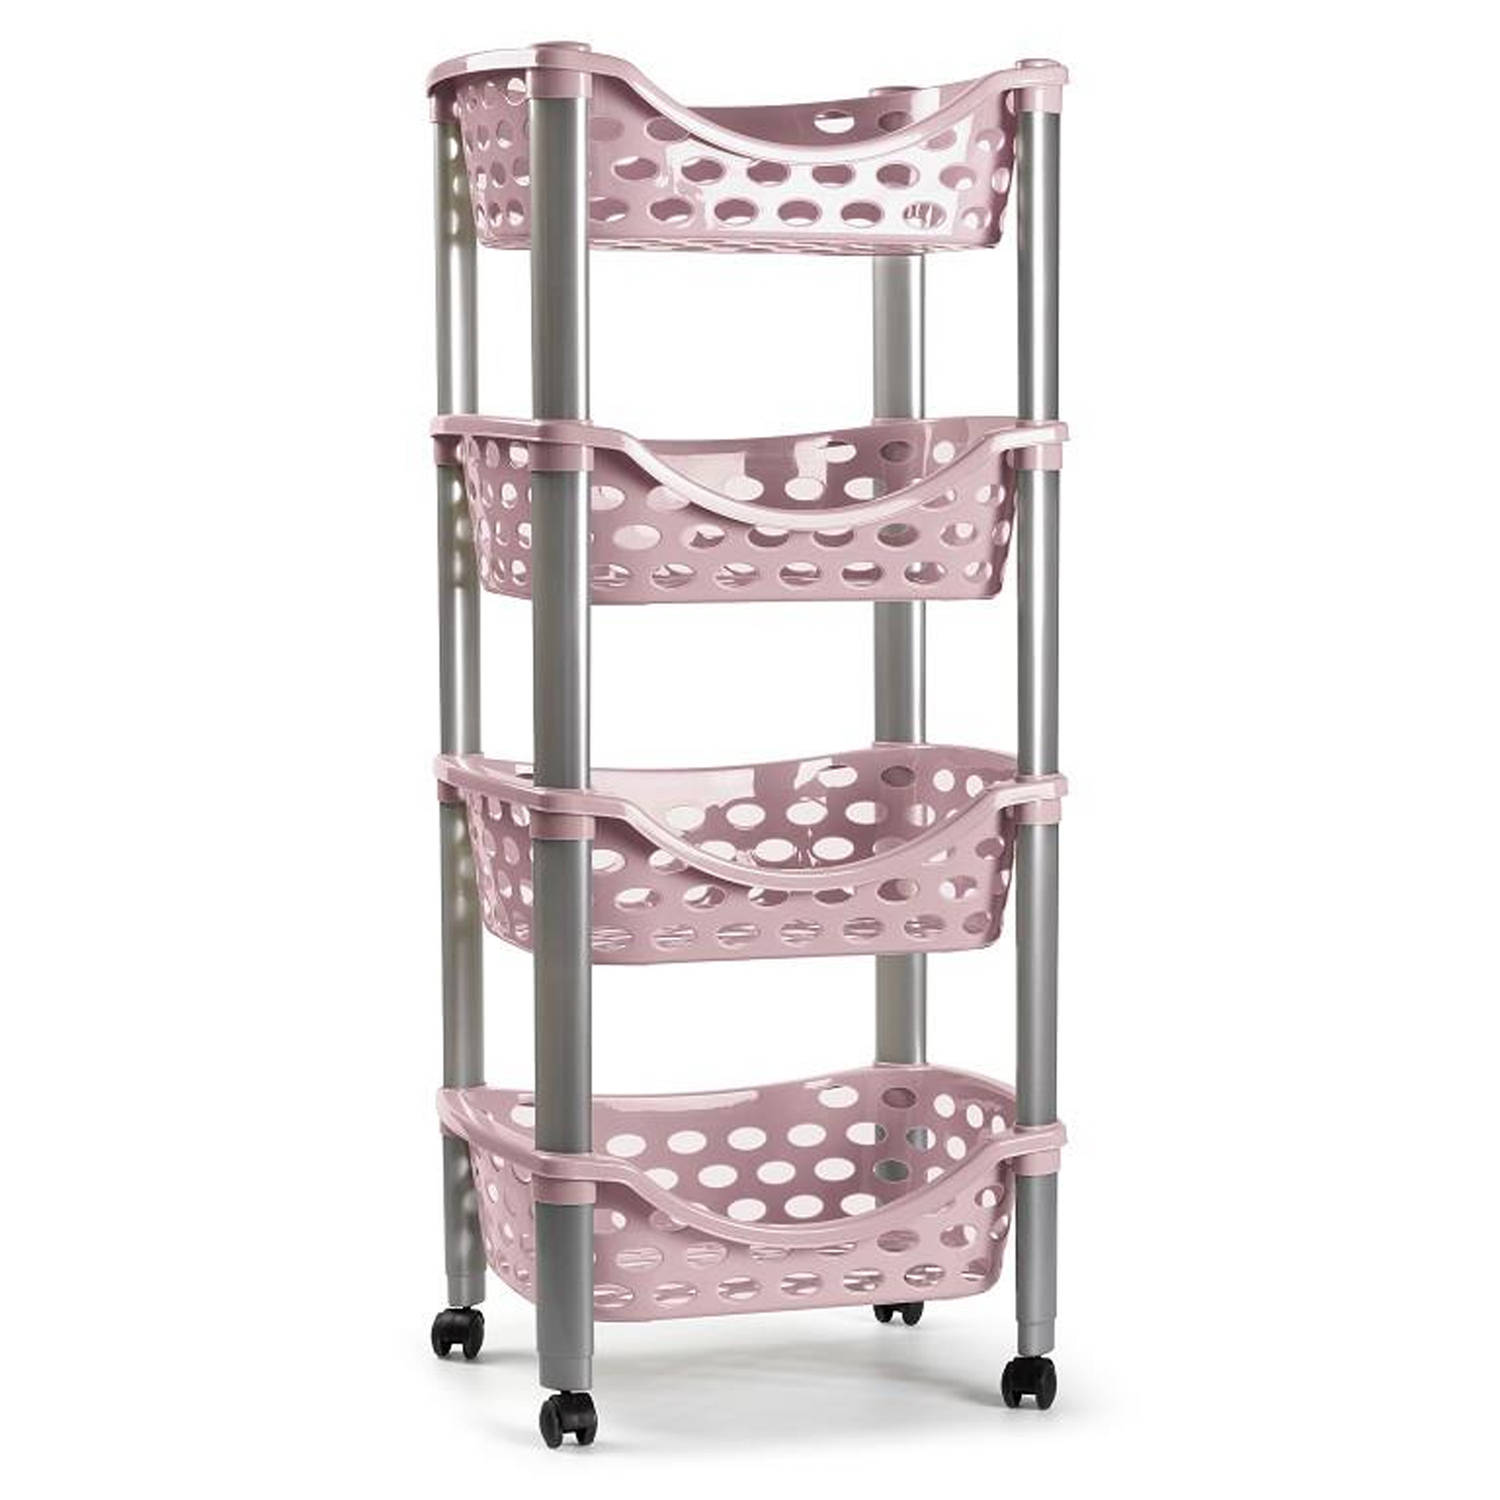 Keukentrolley-roltafel 4 laags kunststof roze 40 x 88 cm Opberg trolley